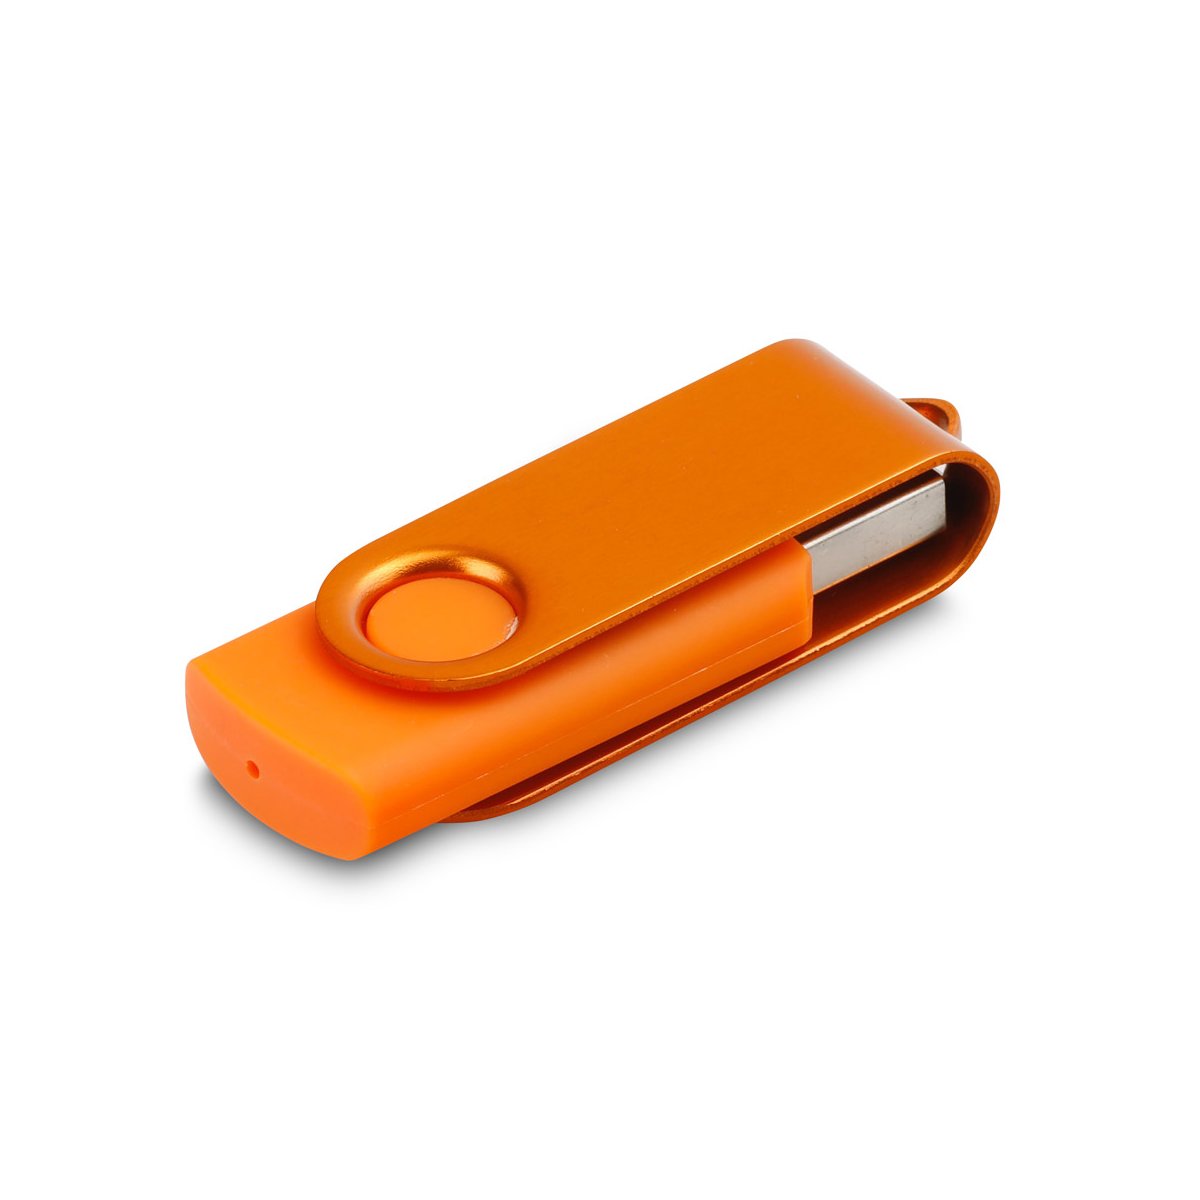 11080. Dysk flash USB o pojemności 8 GB - Pomarańczowy